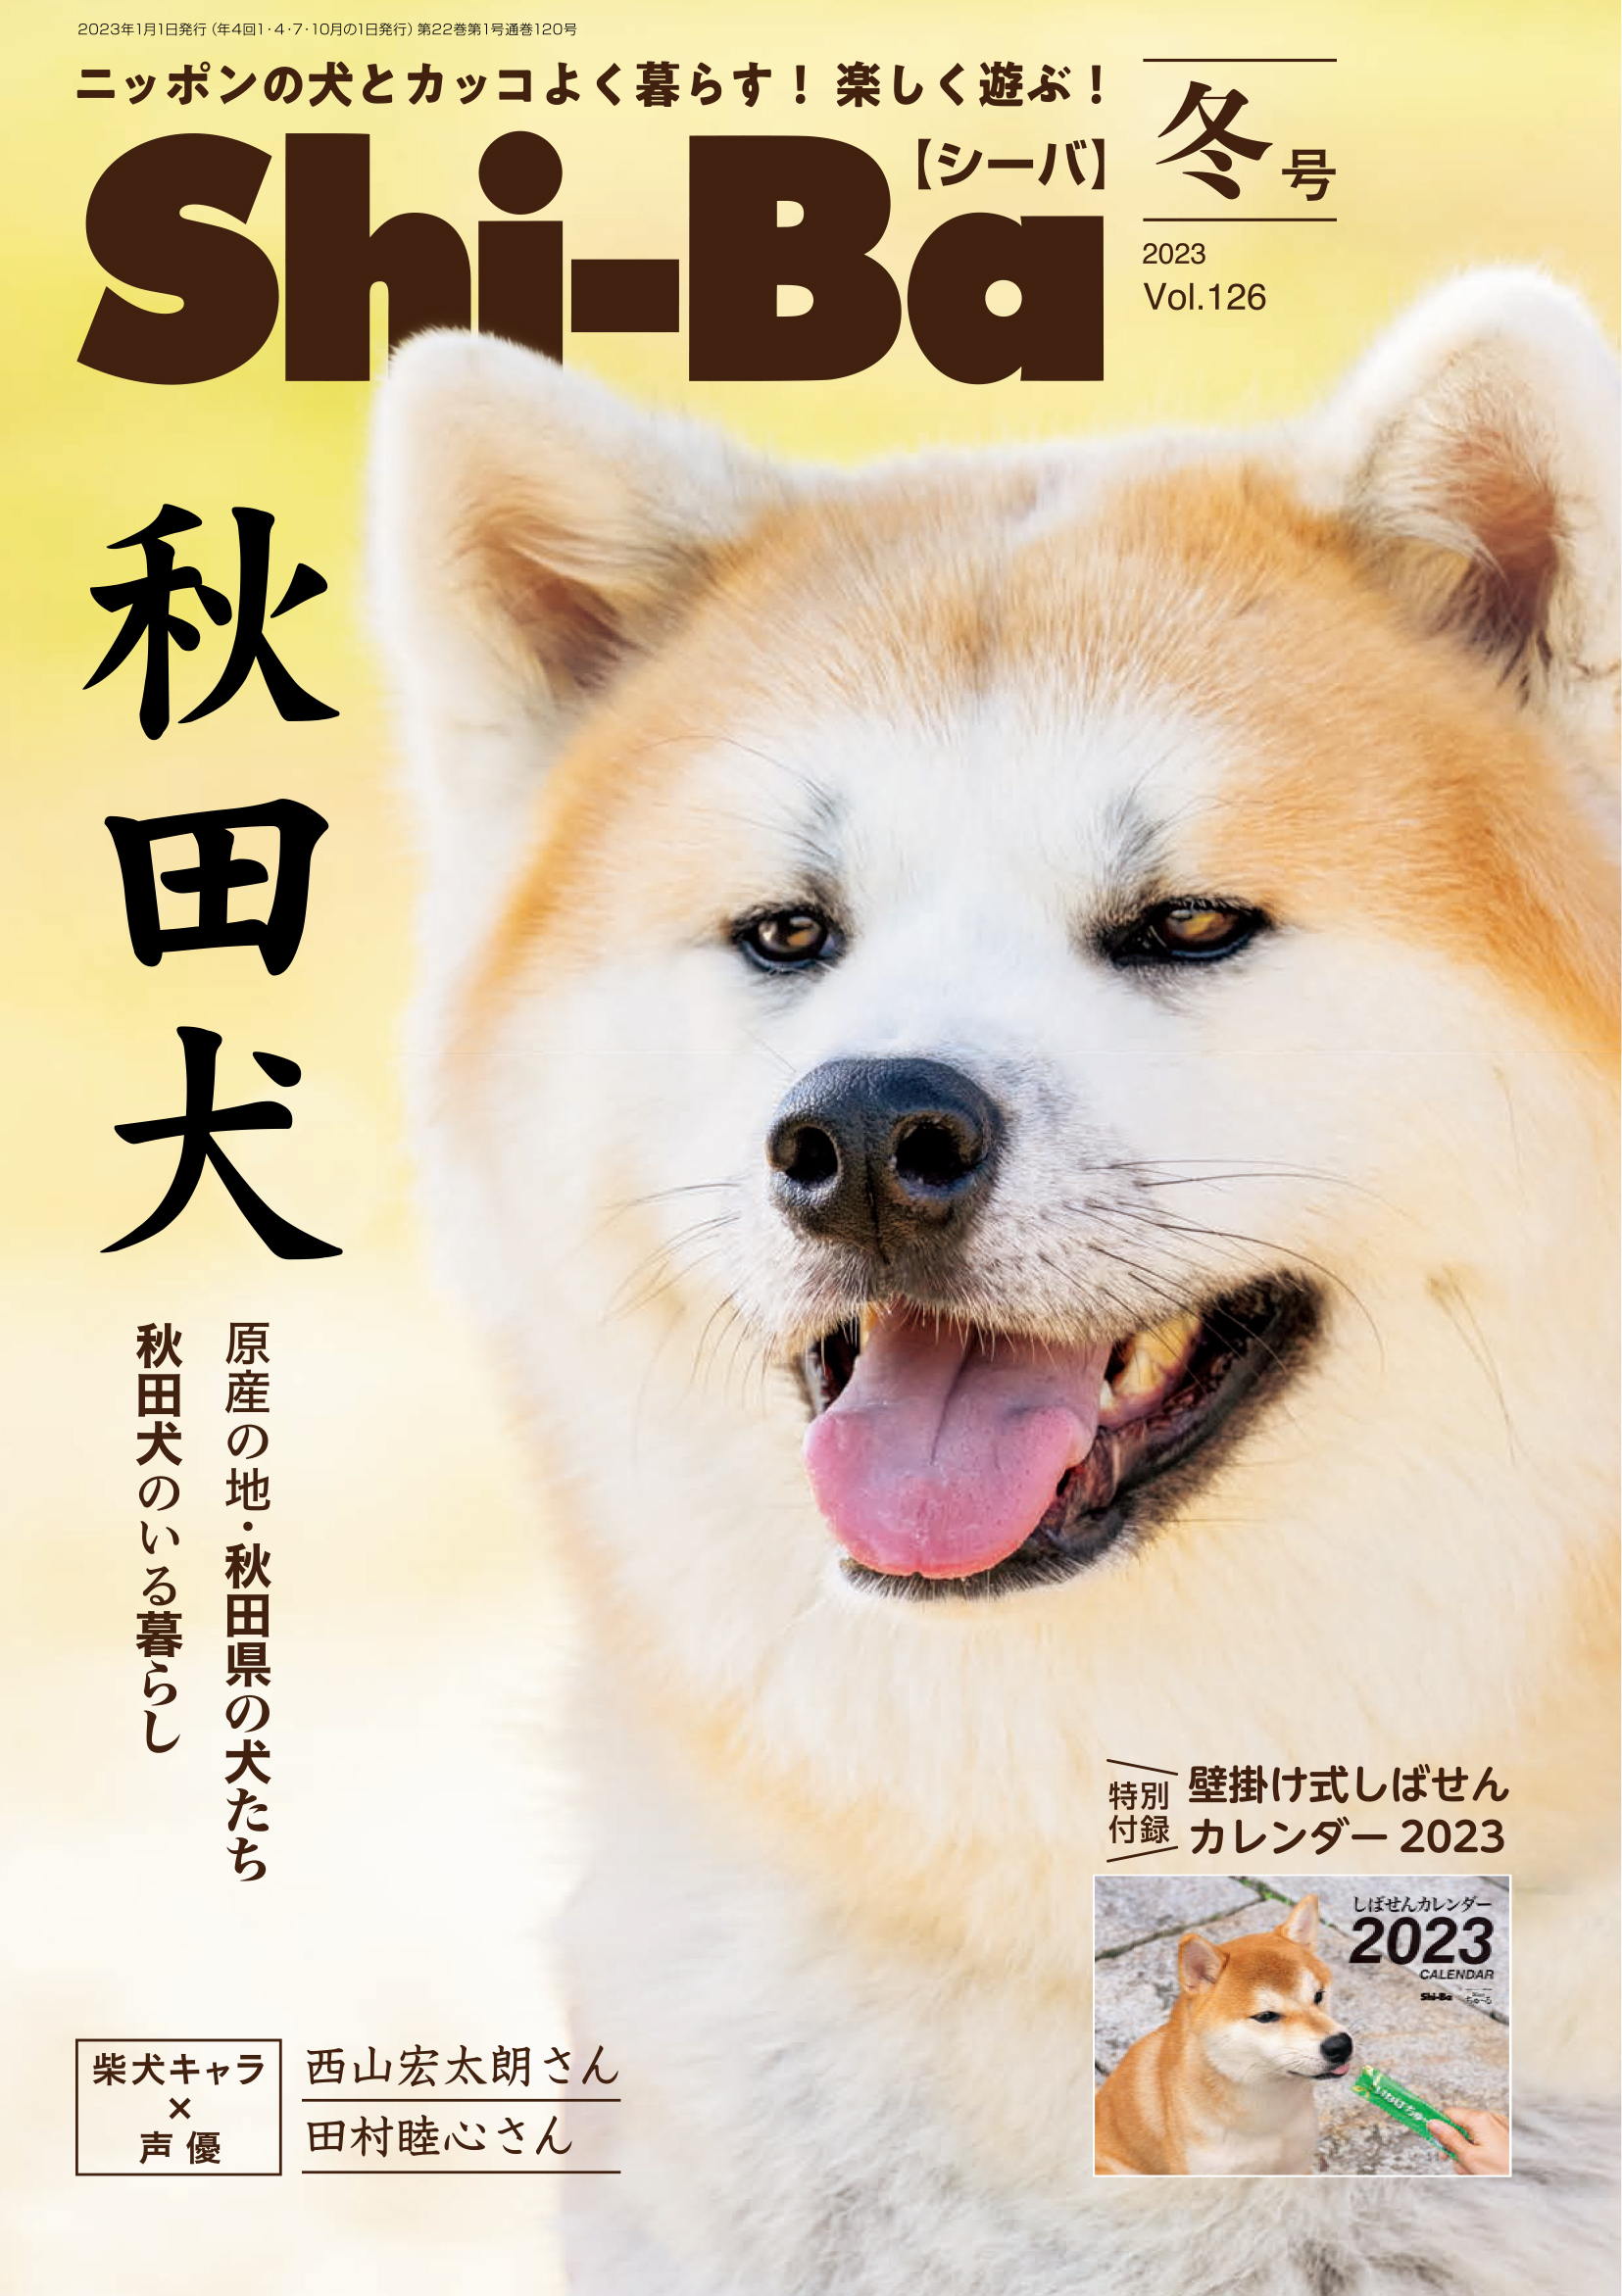 秋田犬 の魅力を徹底特集 Shi Ba シーバ 最新号 大人気の柴犬川柳カレンダーが特別付録 Real Sound リアルサウンド ブック